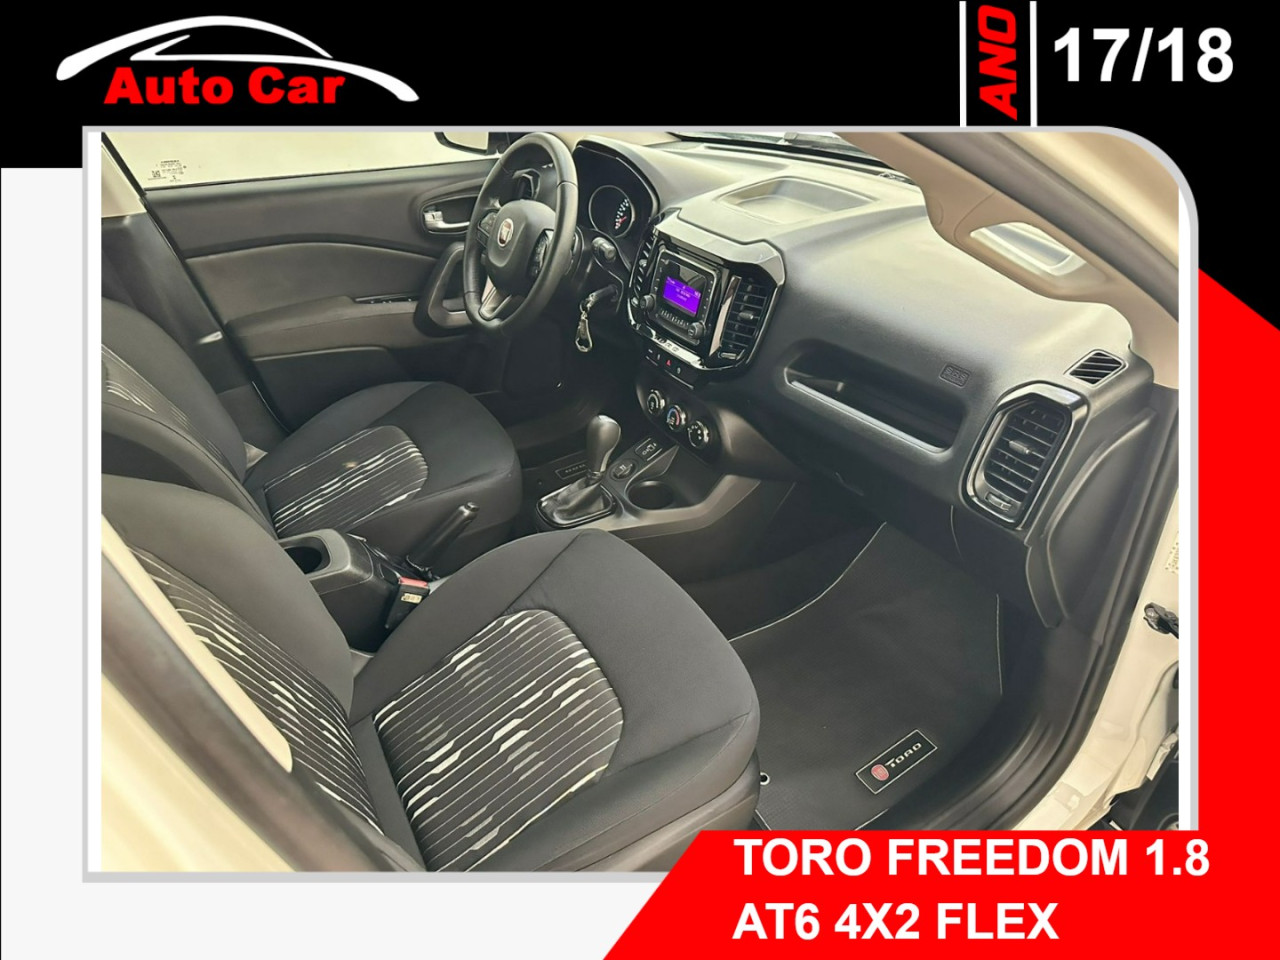 Toro 1.8 16V 4P FLEX FREEDOM AUTOMÁTICO